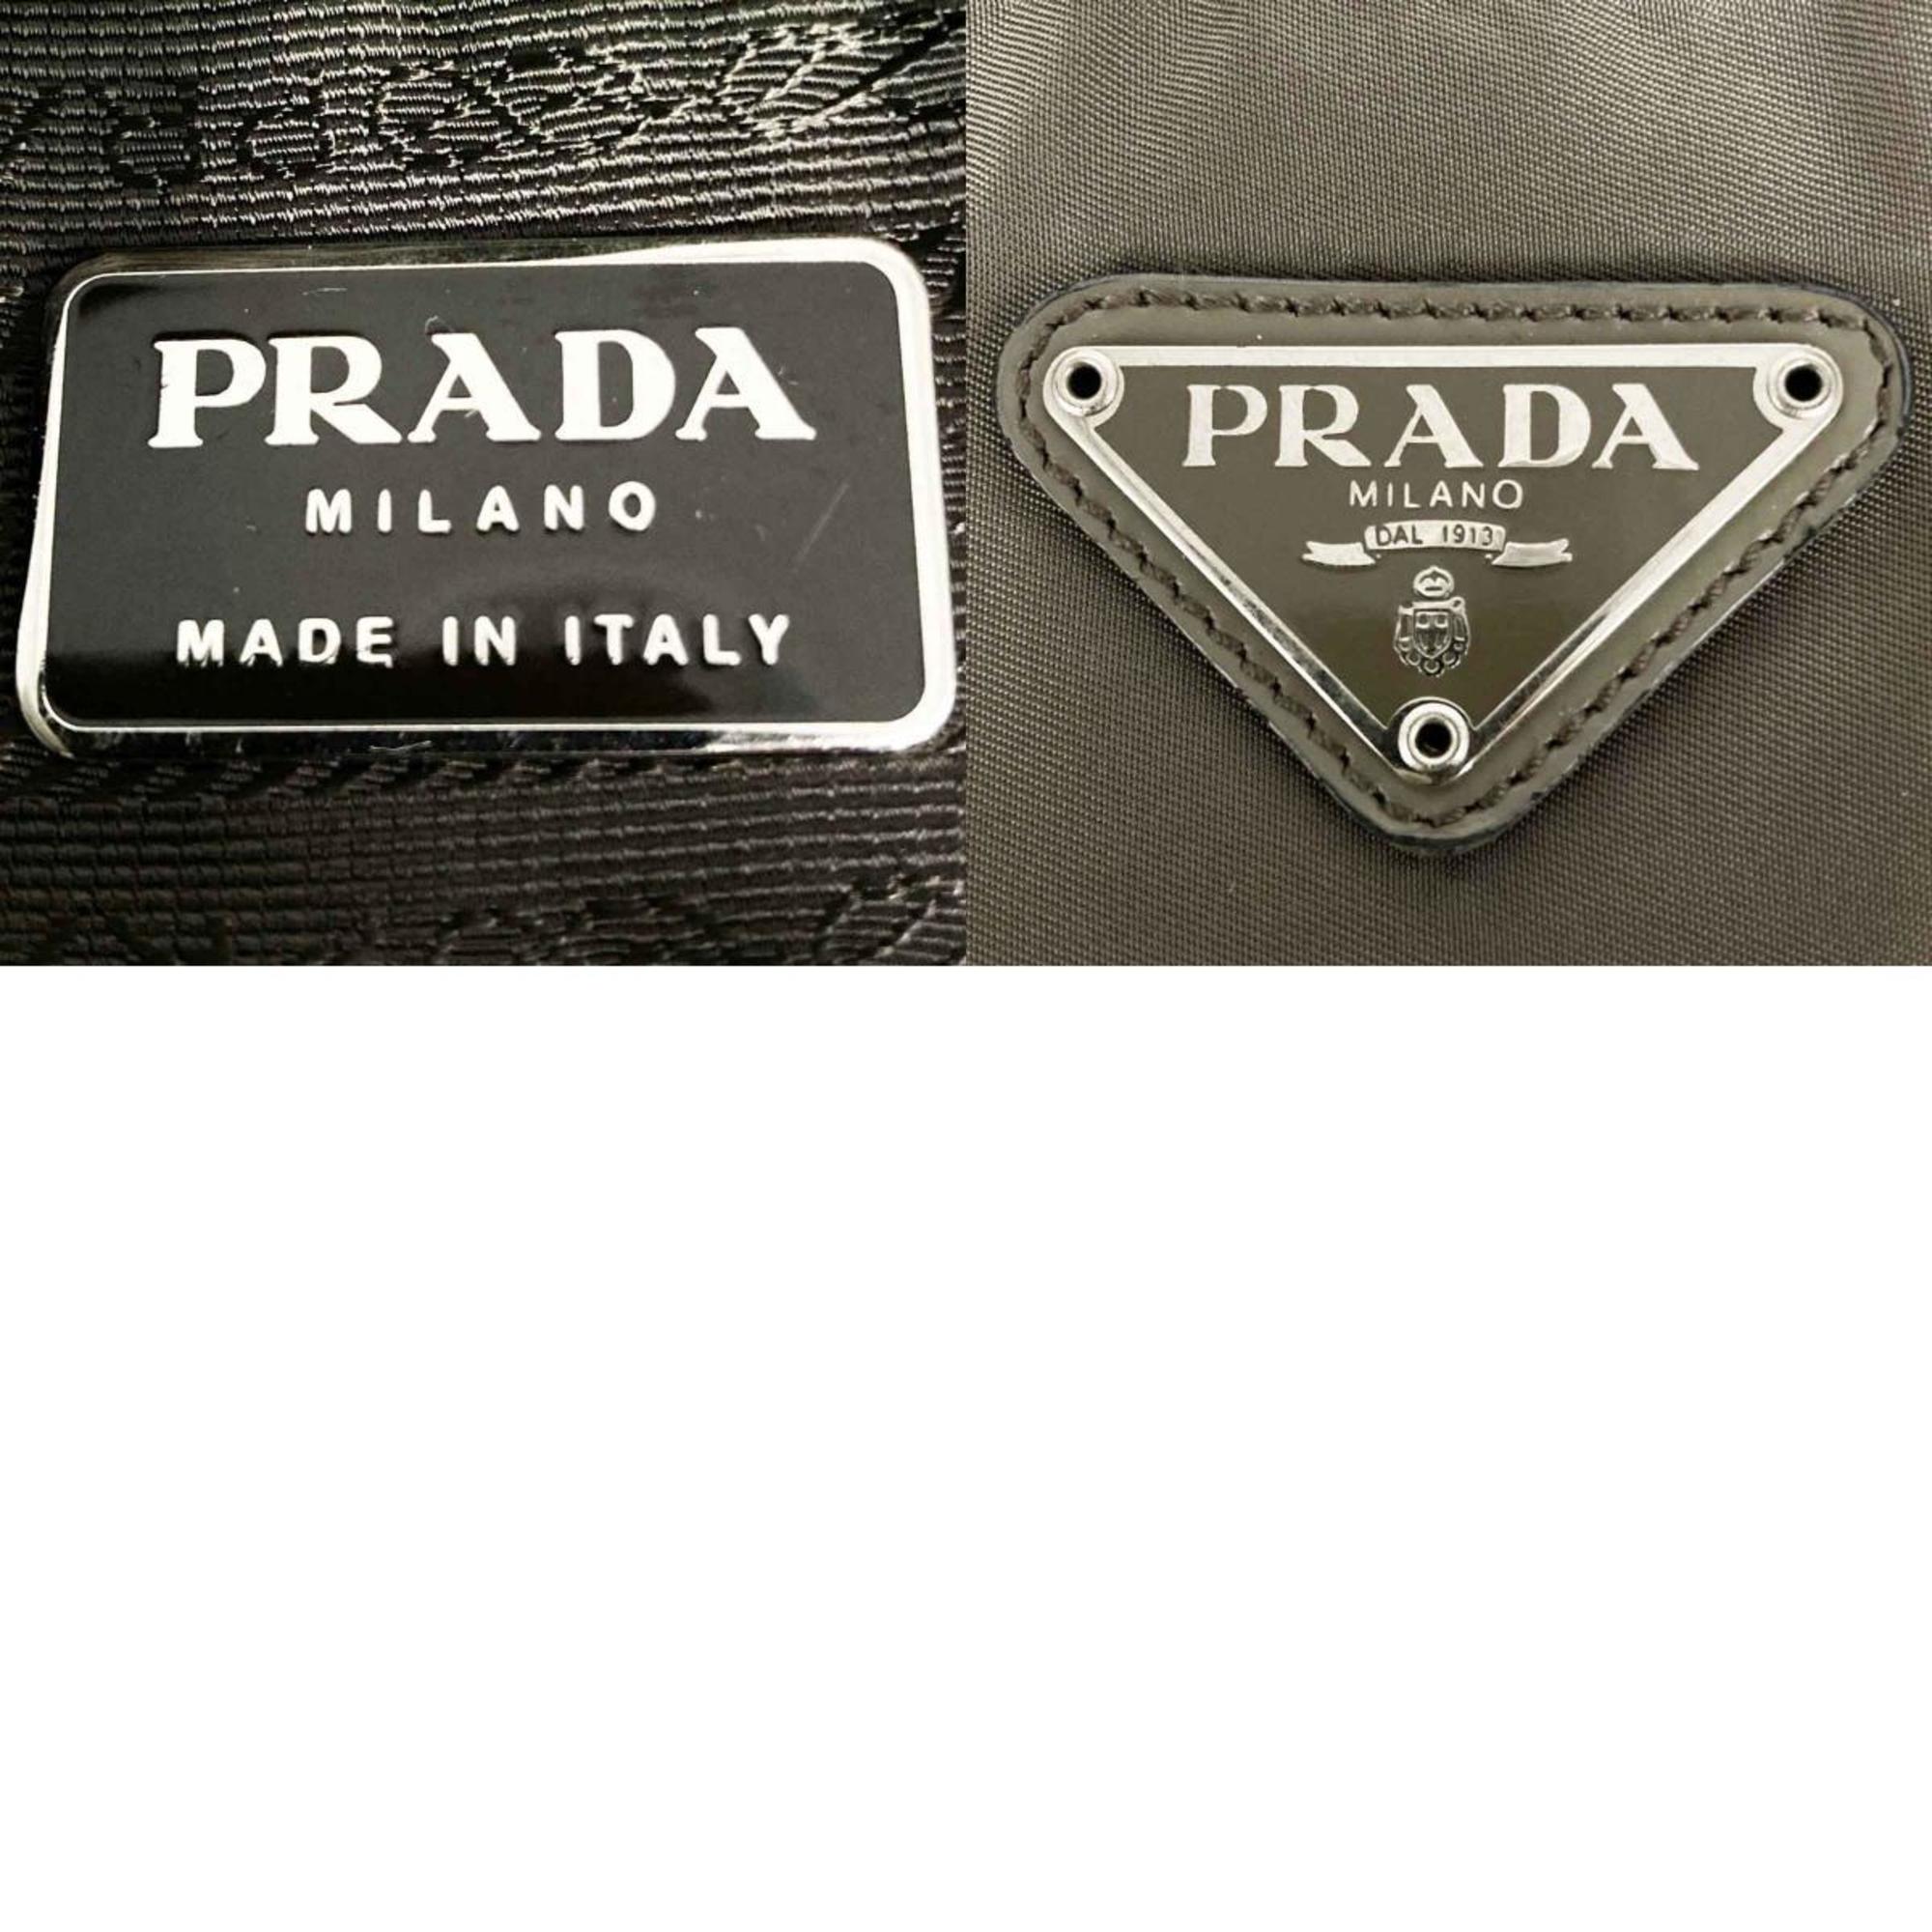 PRADA Prada tote bag nylon triangle khaki ladies men's fashion IT157ORQP3XI